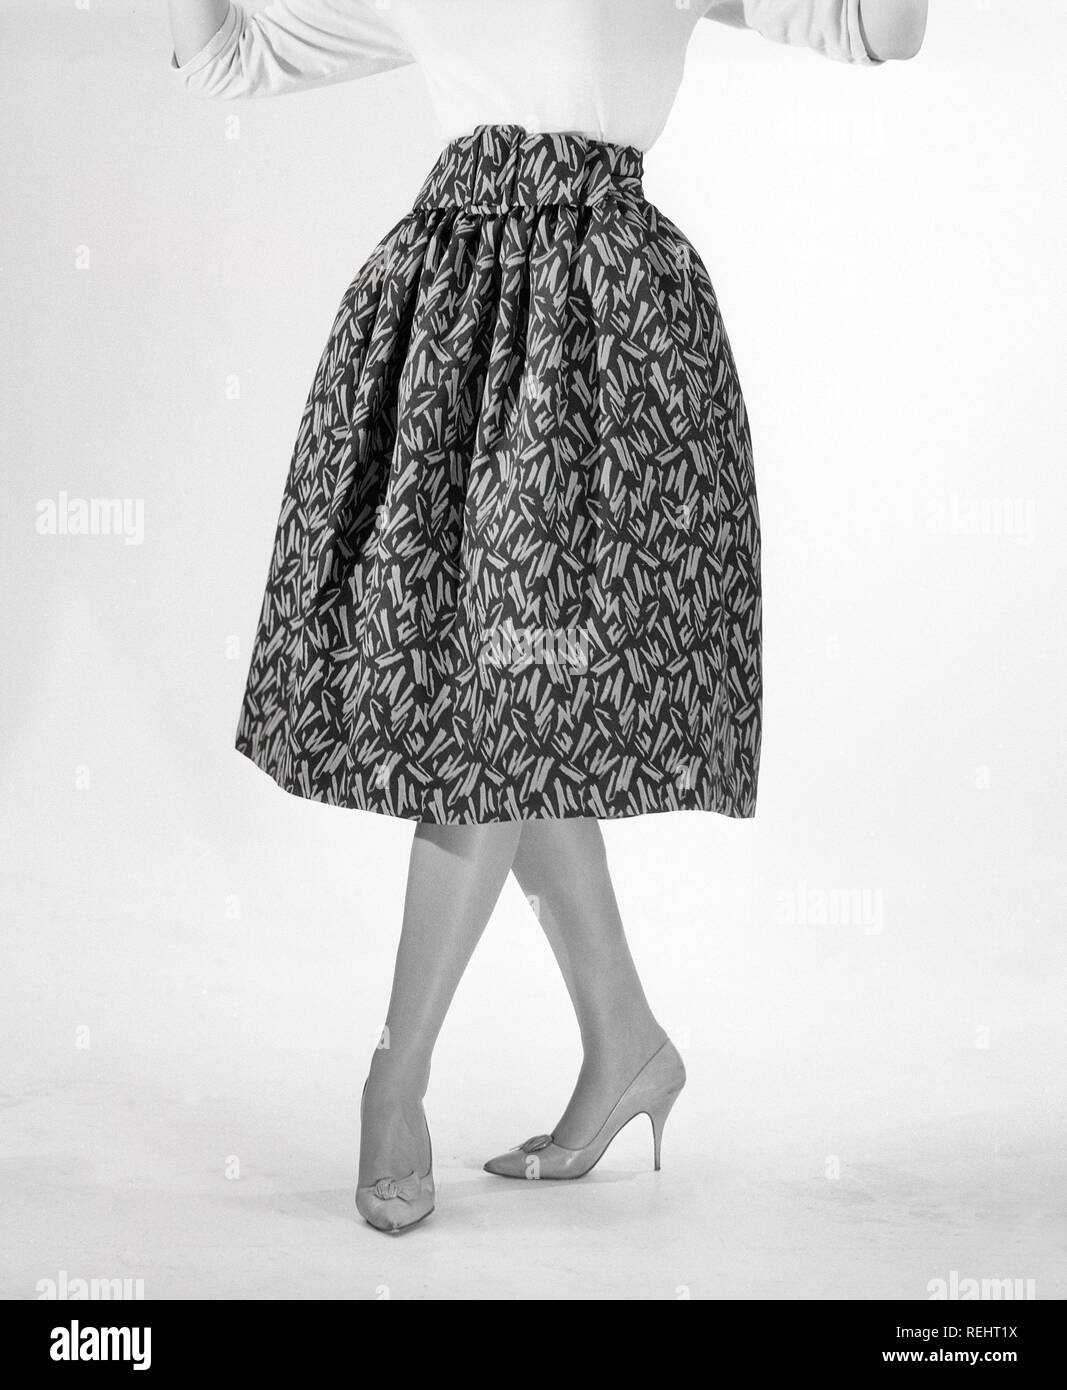 50er Jahre Mode. Eine junge Frau in einem typischen 50er Jahre Kleid. Einen weiten Rock Kleid mit einem 50 s patterened Gewebe. Schweden 1950. Foto Kristoffersson ref CO 96-8 Stockfoto